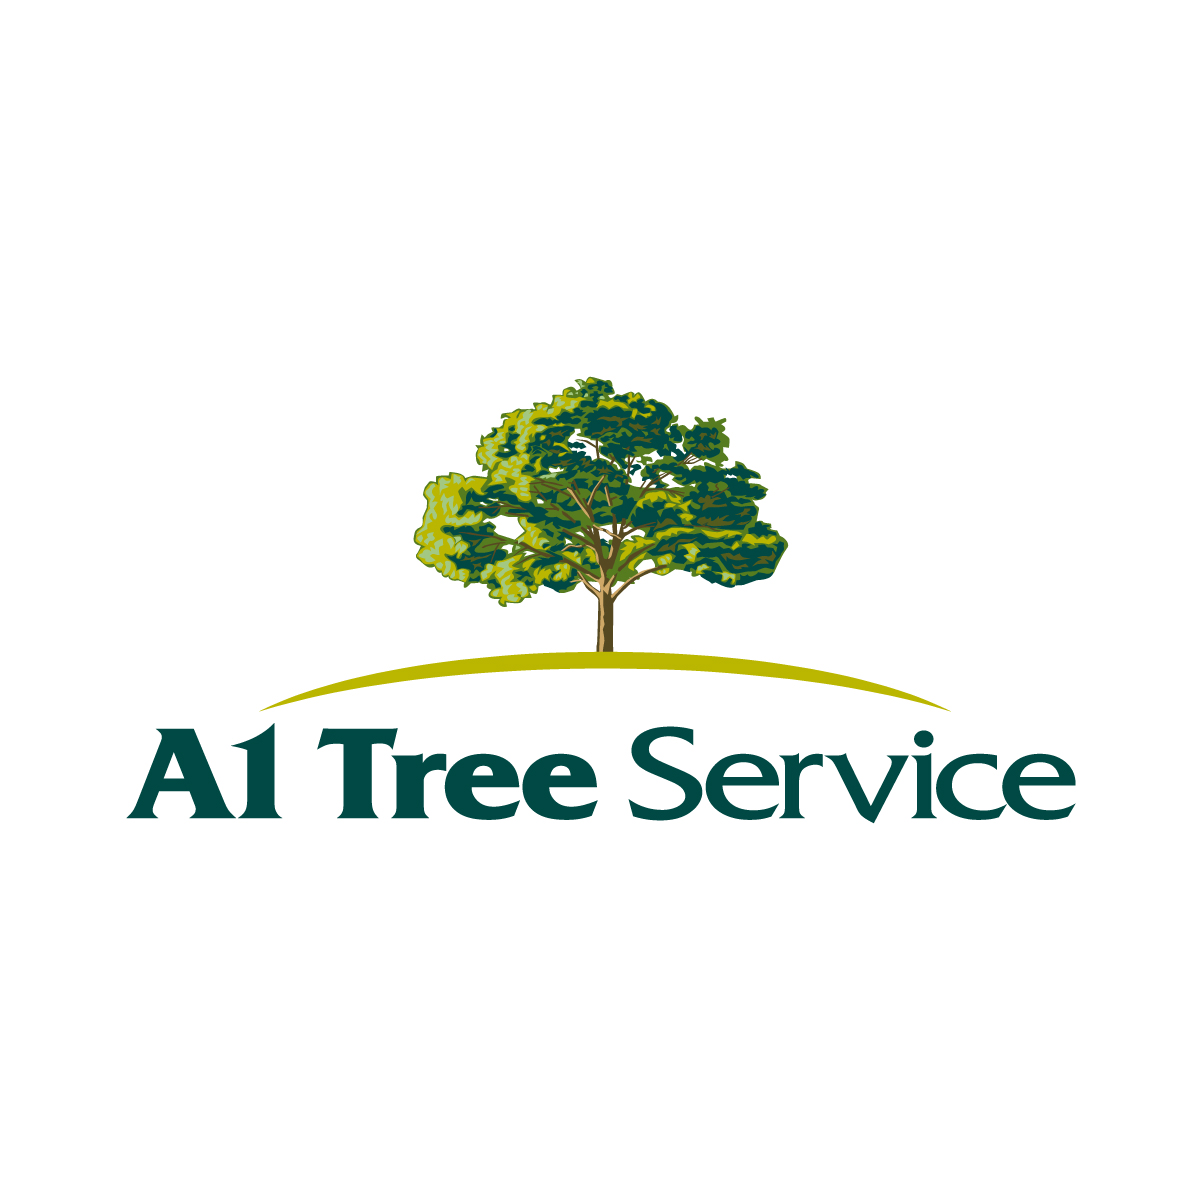 tree service logo ideas 4